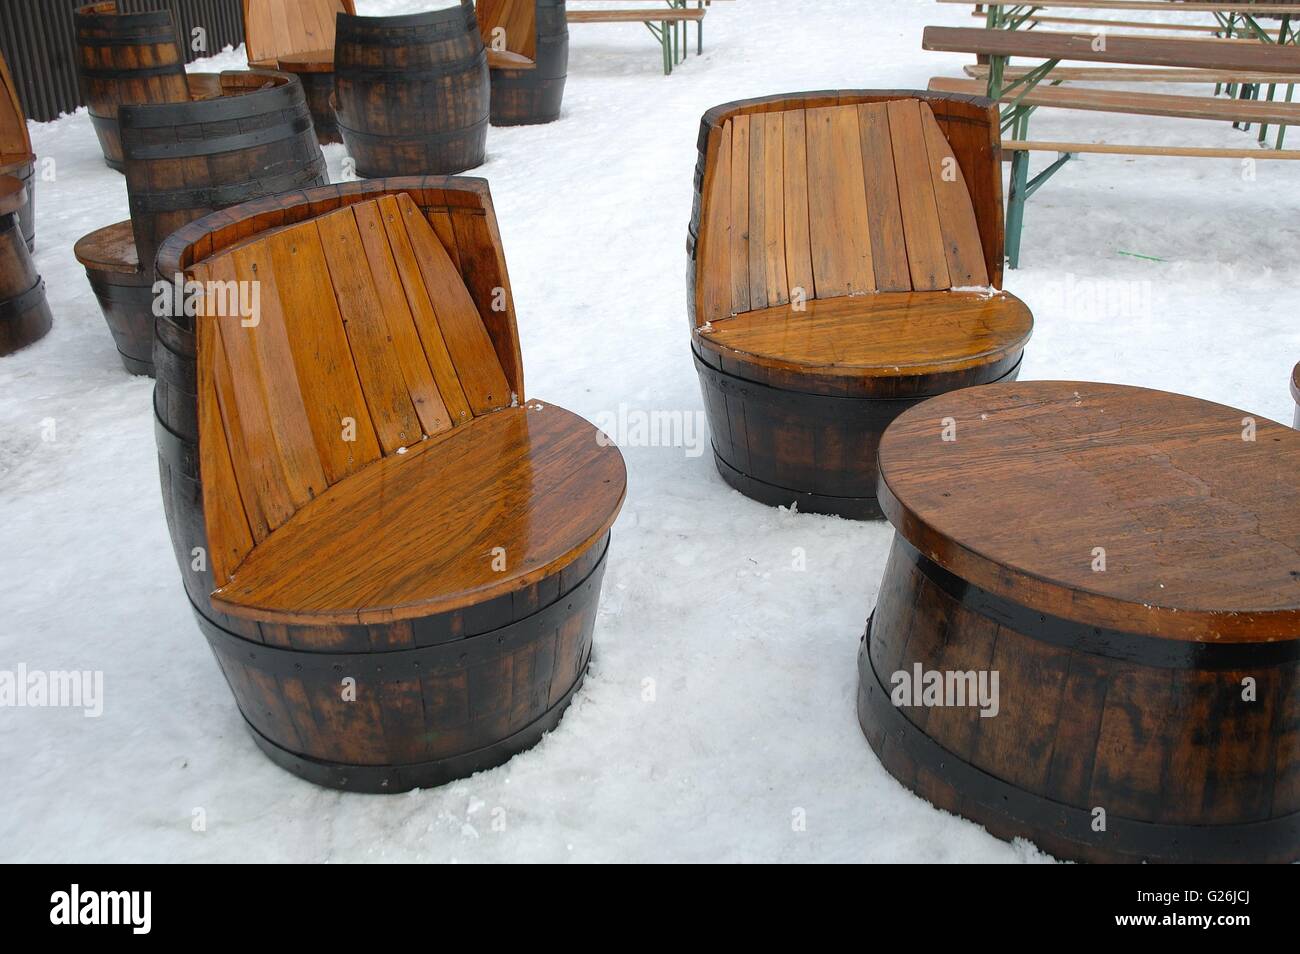 Table en bois et sièges uniques faites de vieux barils debout sur la neige. Banque D'Images